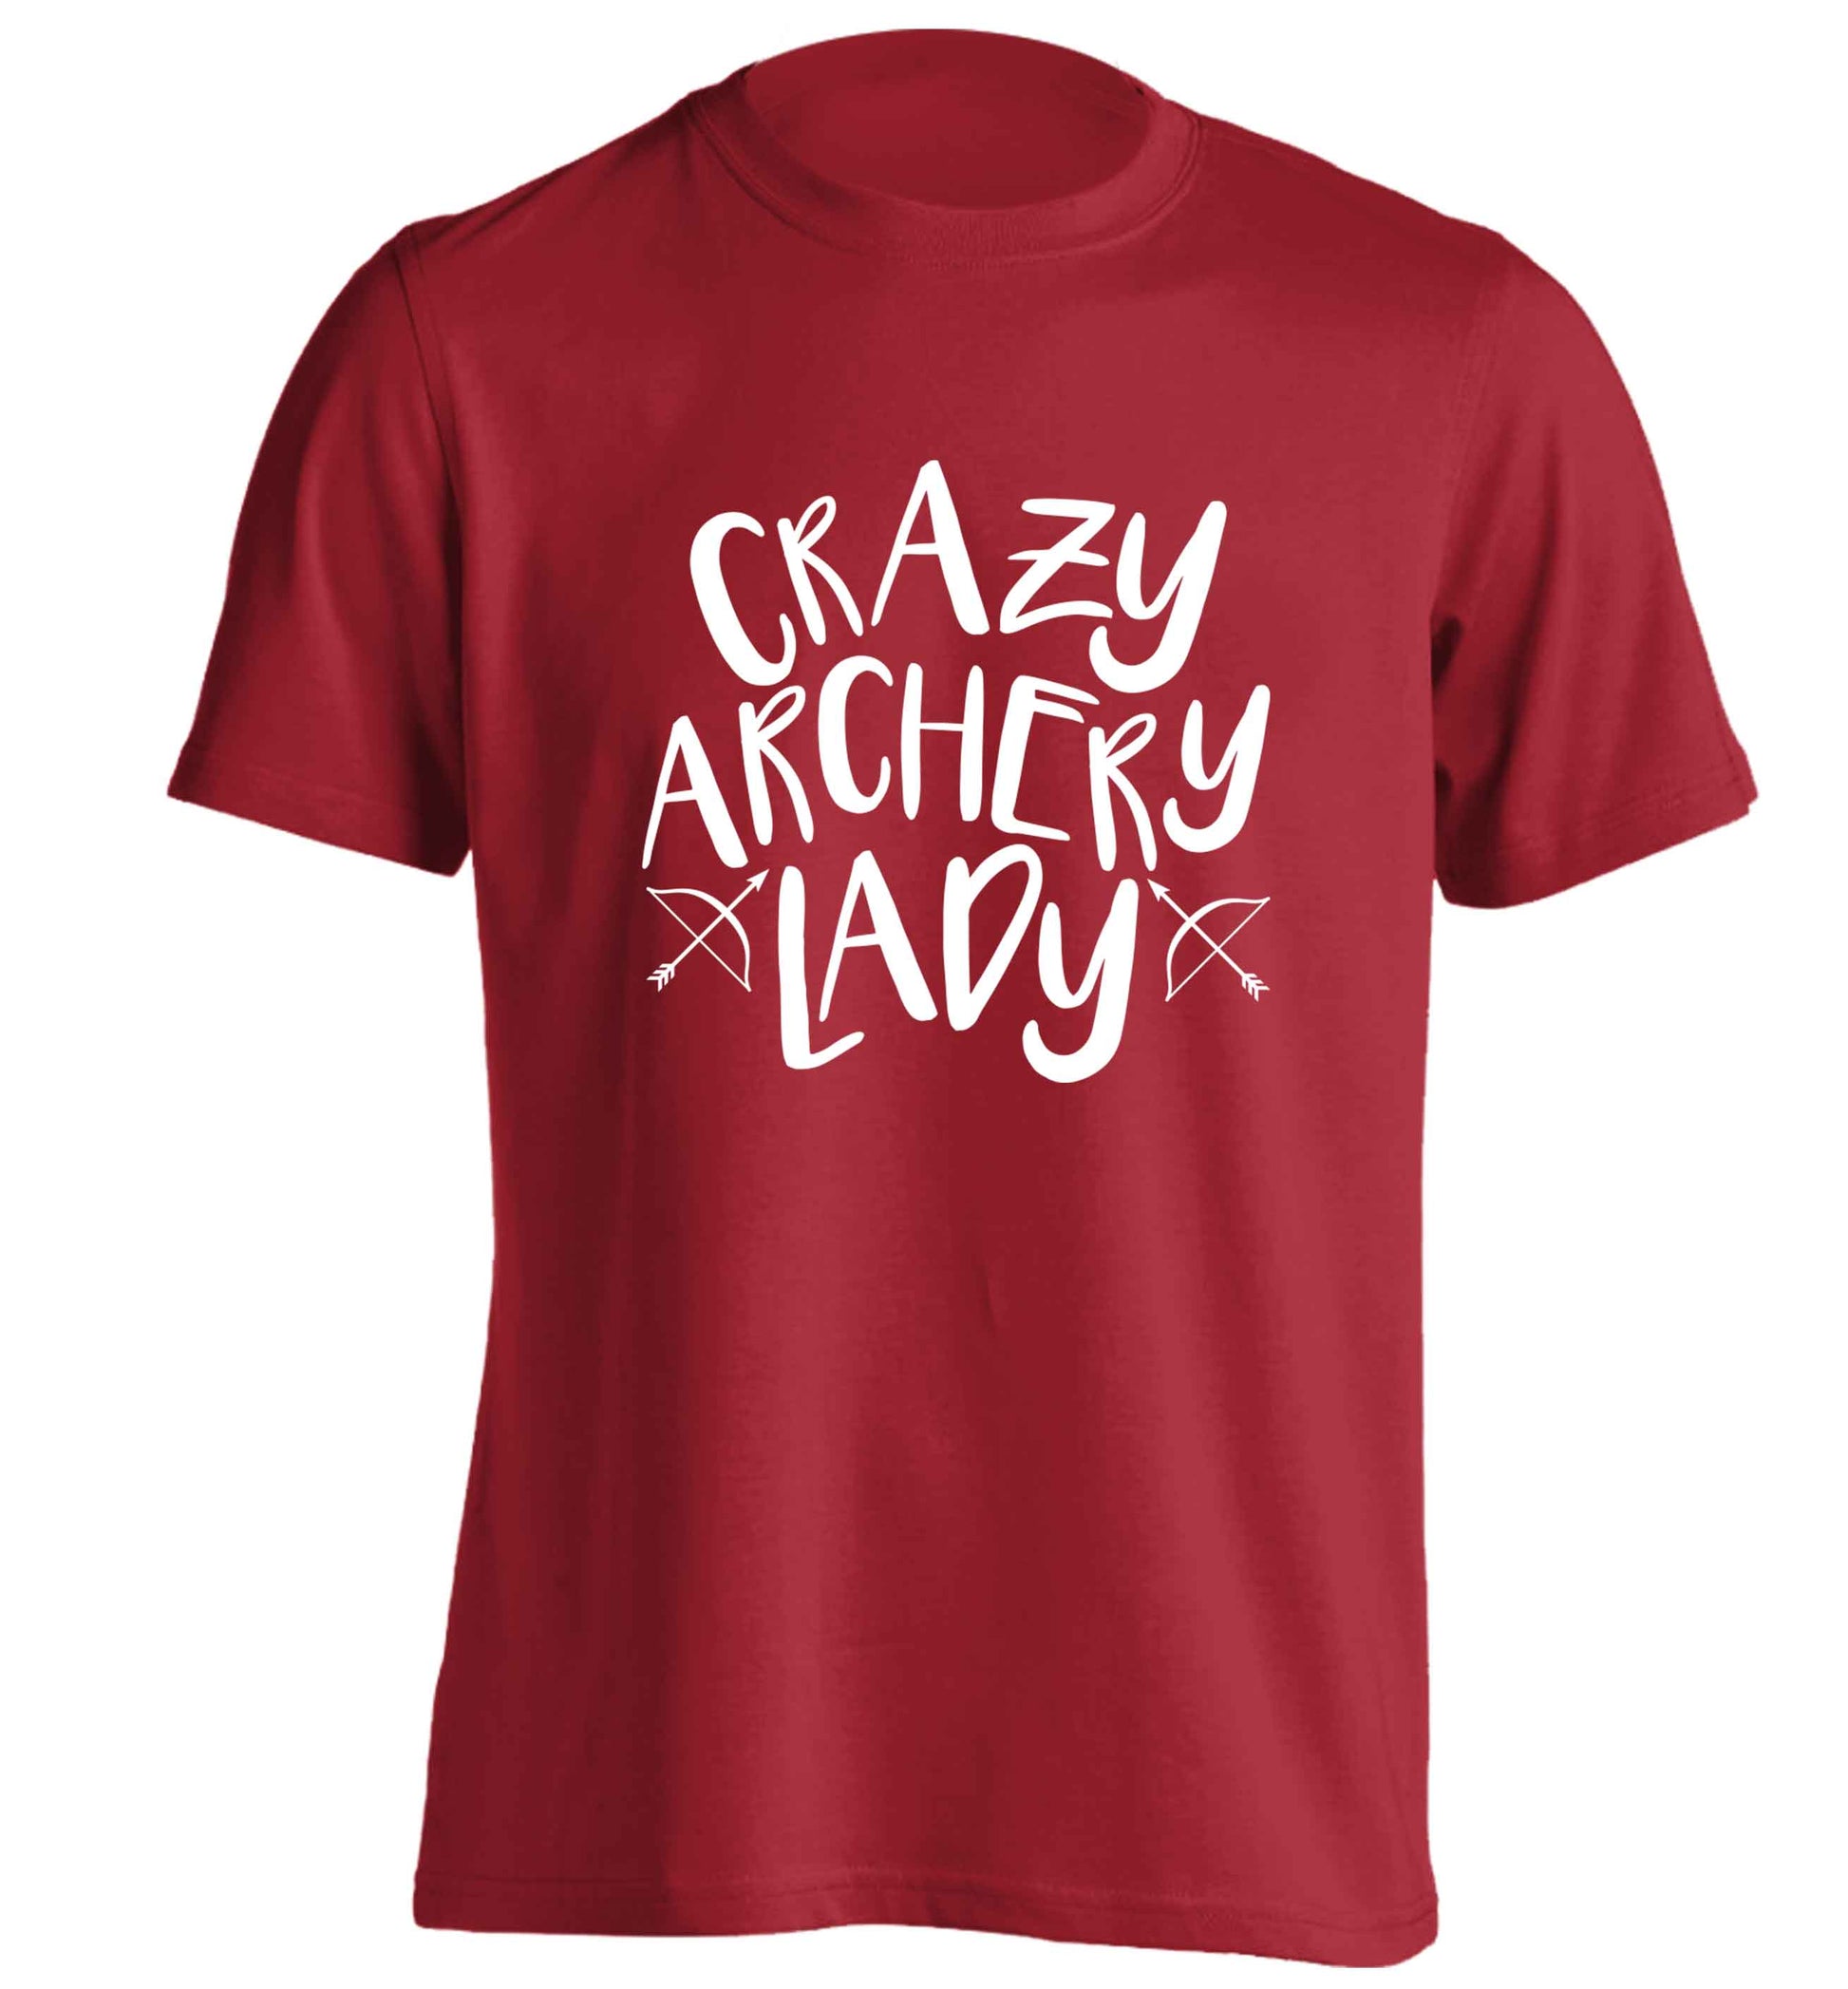 Crazy archery lady adults unisex red Tshirt 2XL